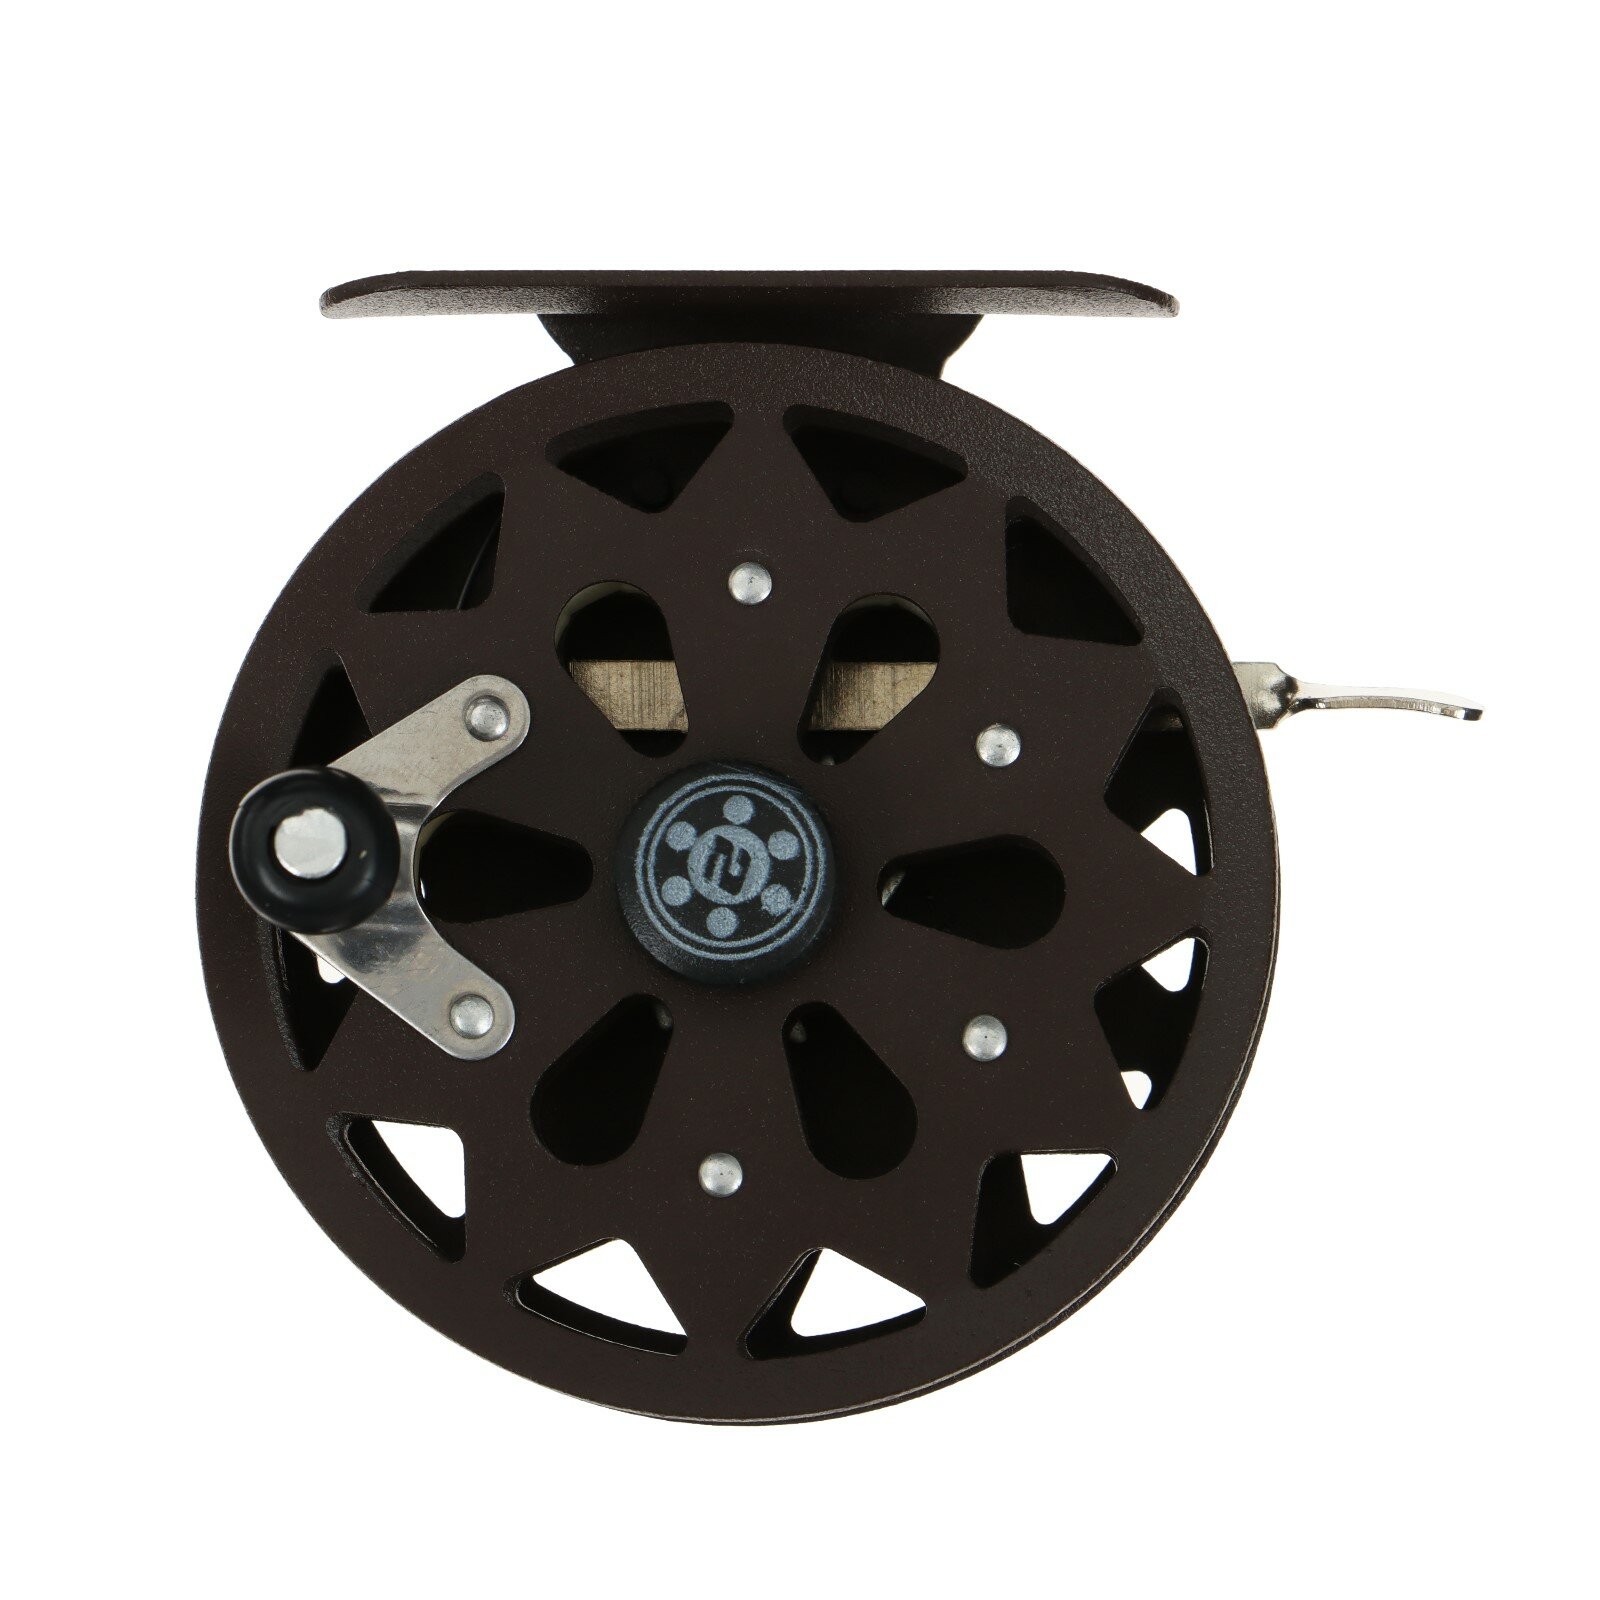 Катушка инерционная, металл, 2 подшипника, диаметр 7.5 см, цвет коричневый, TL75A 9913093